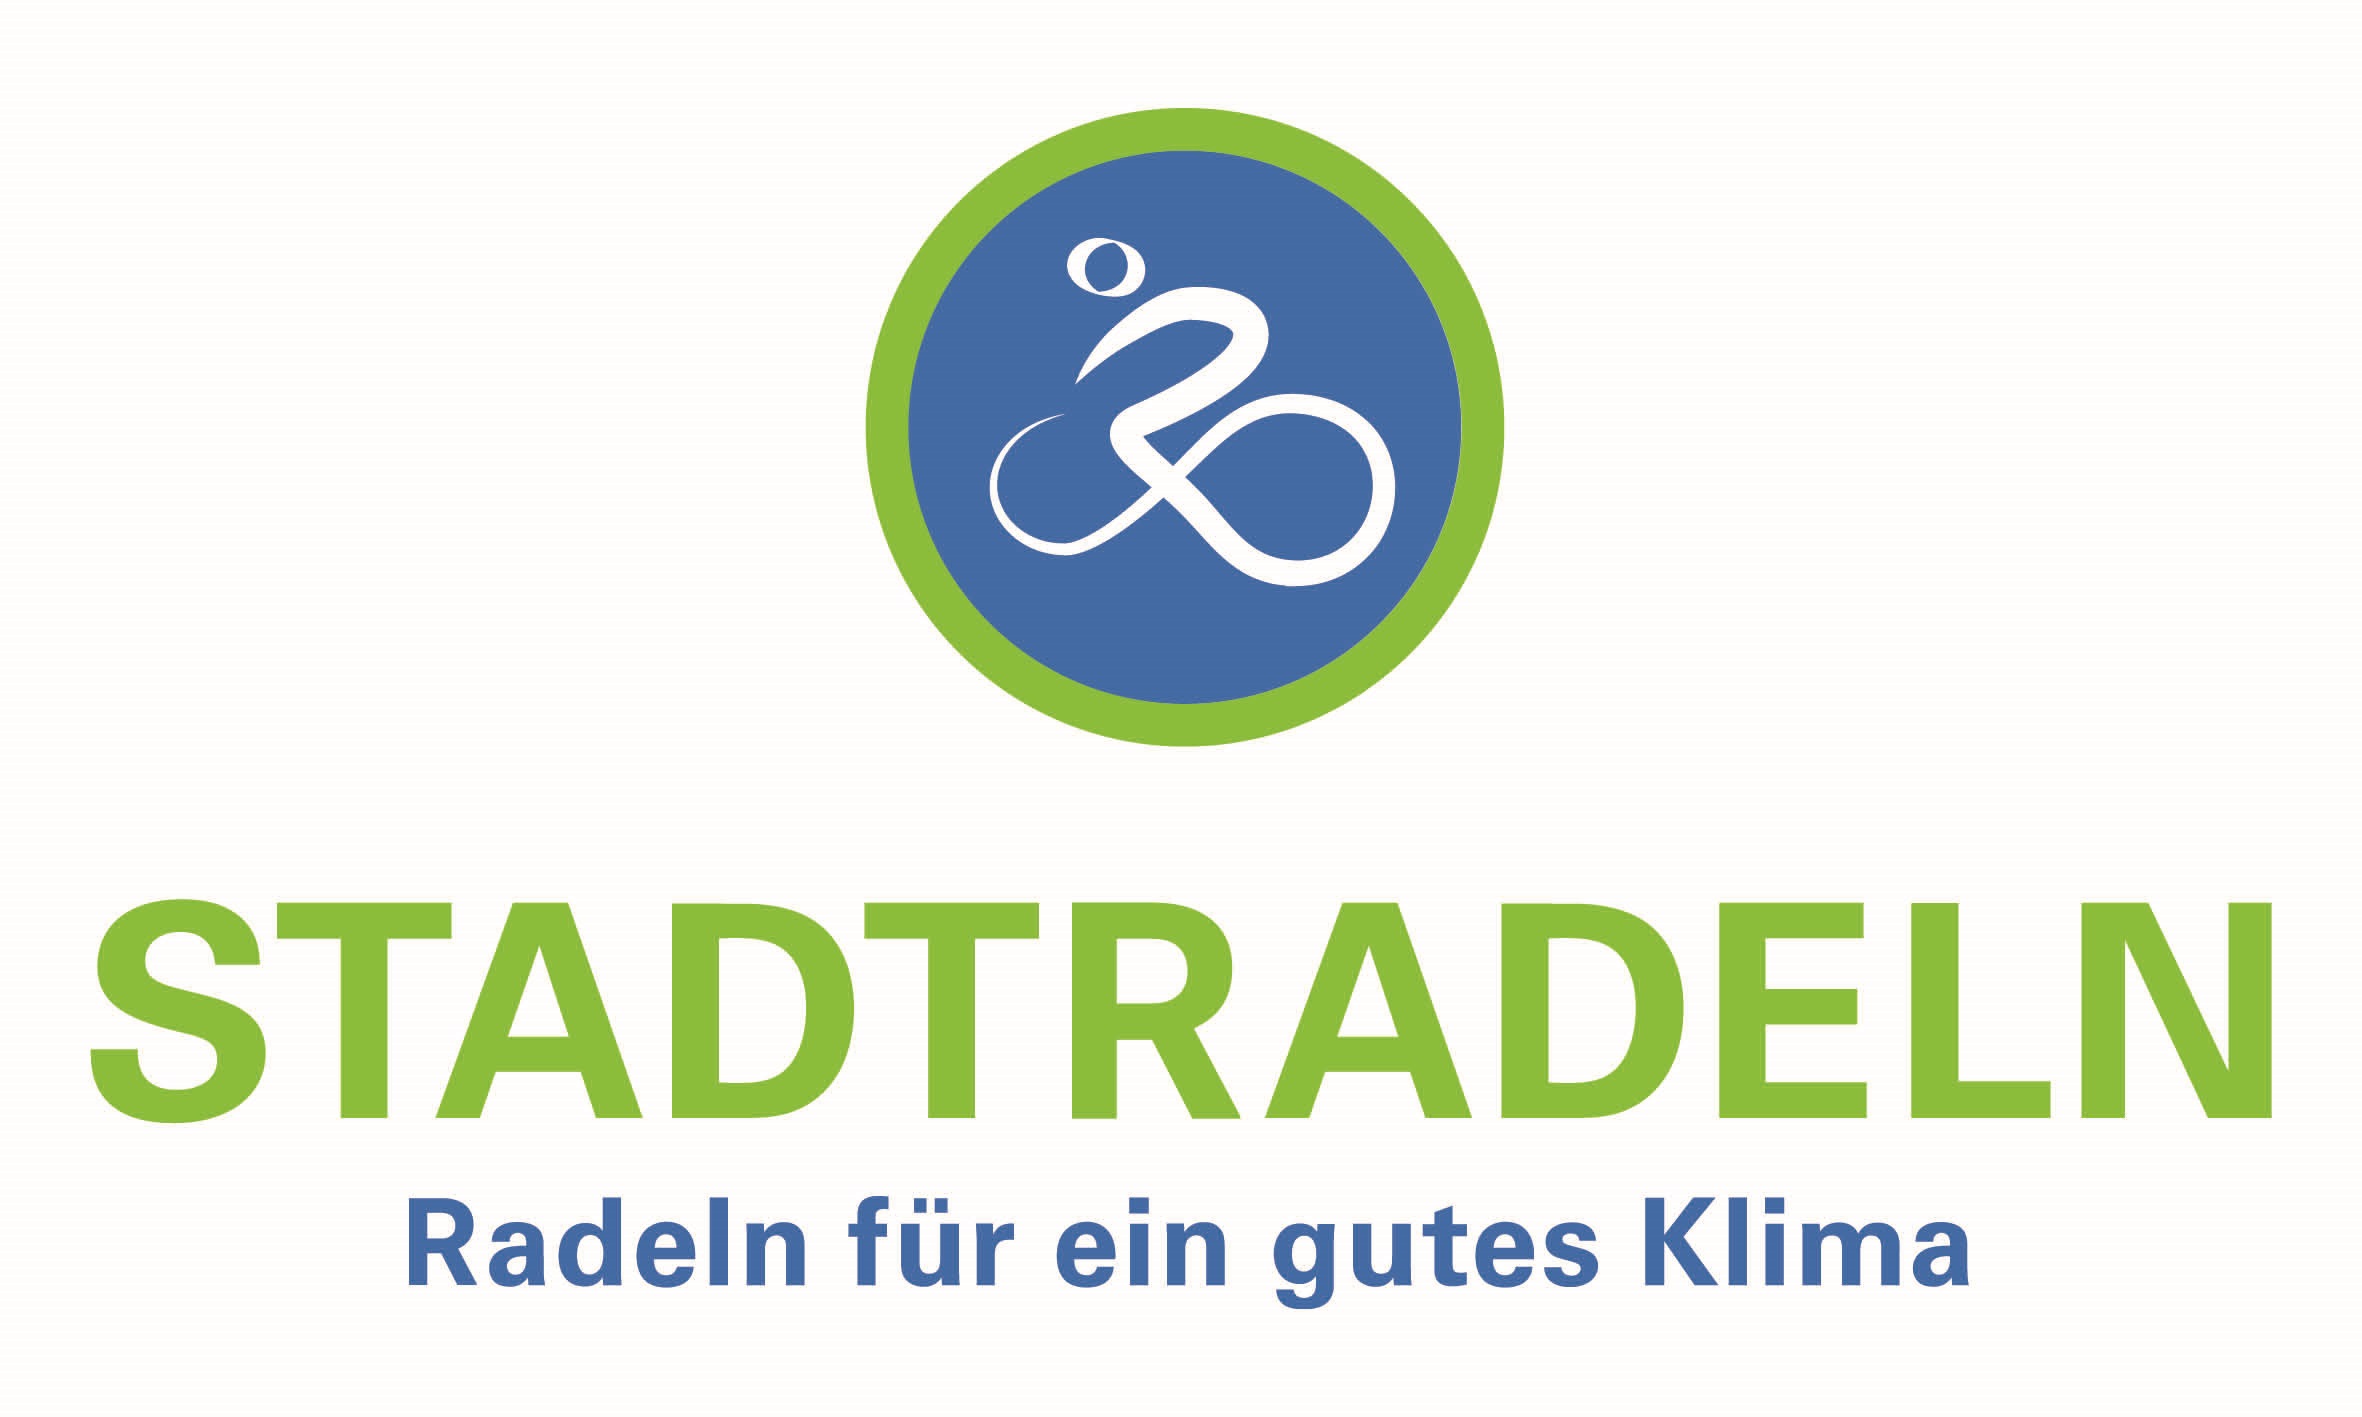 Das Logo der Klima-Bündnis-Kampagne STADTRADELN